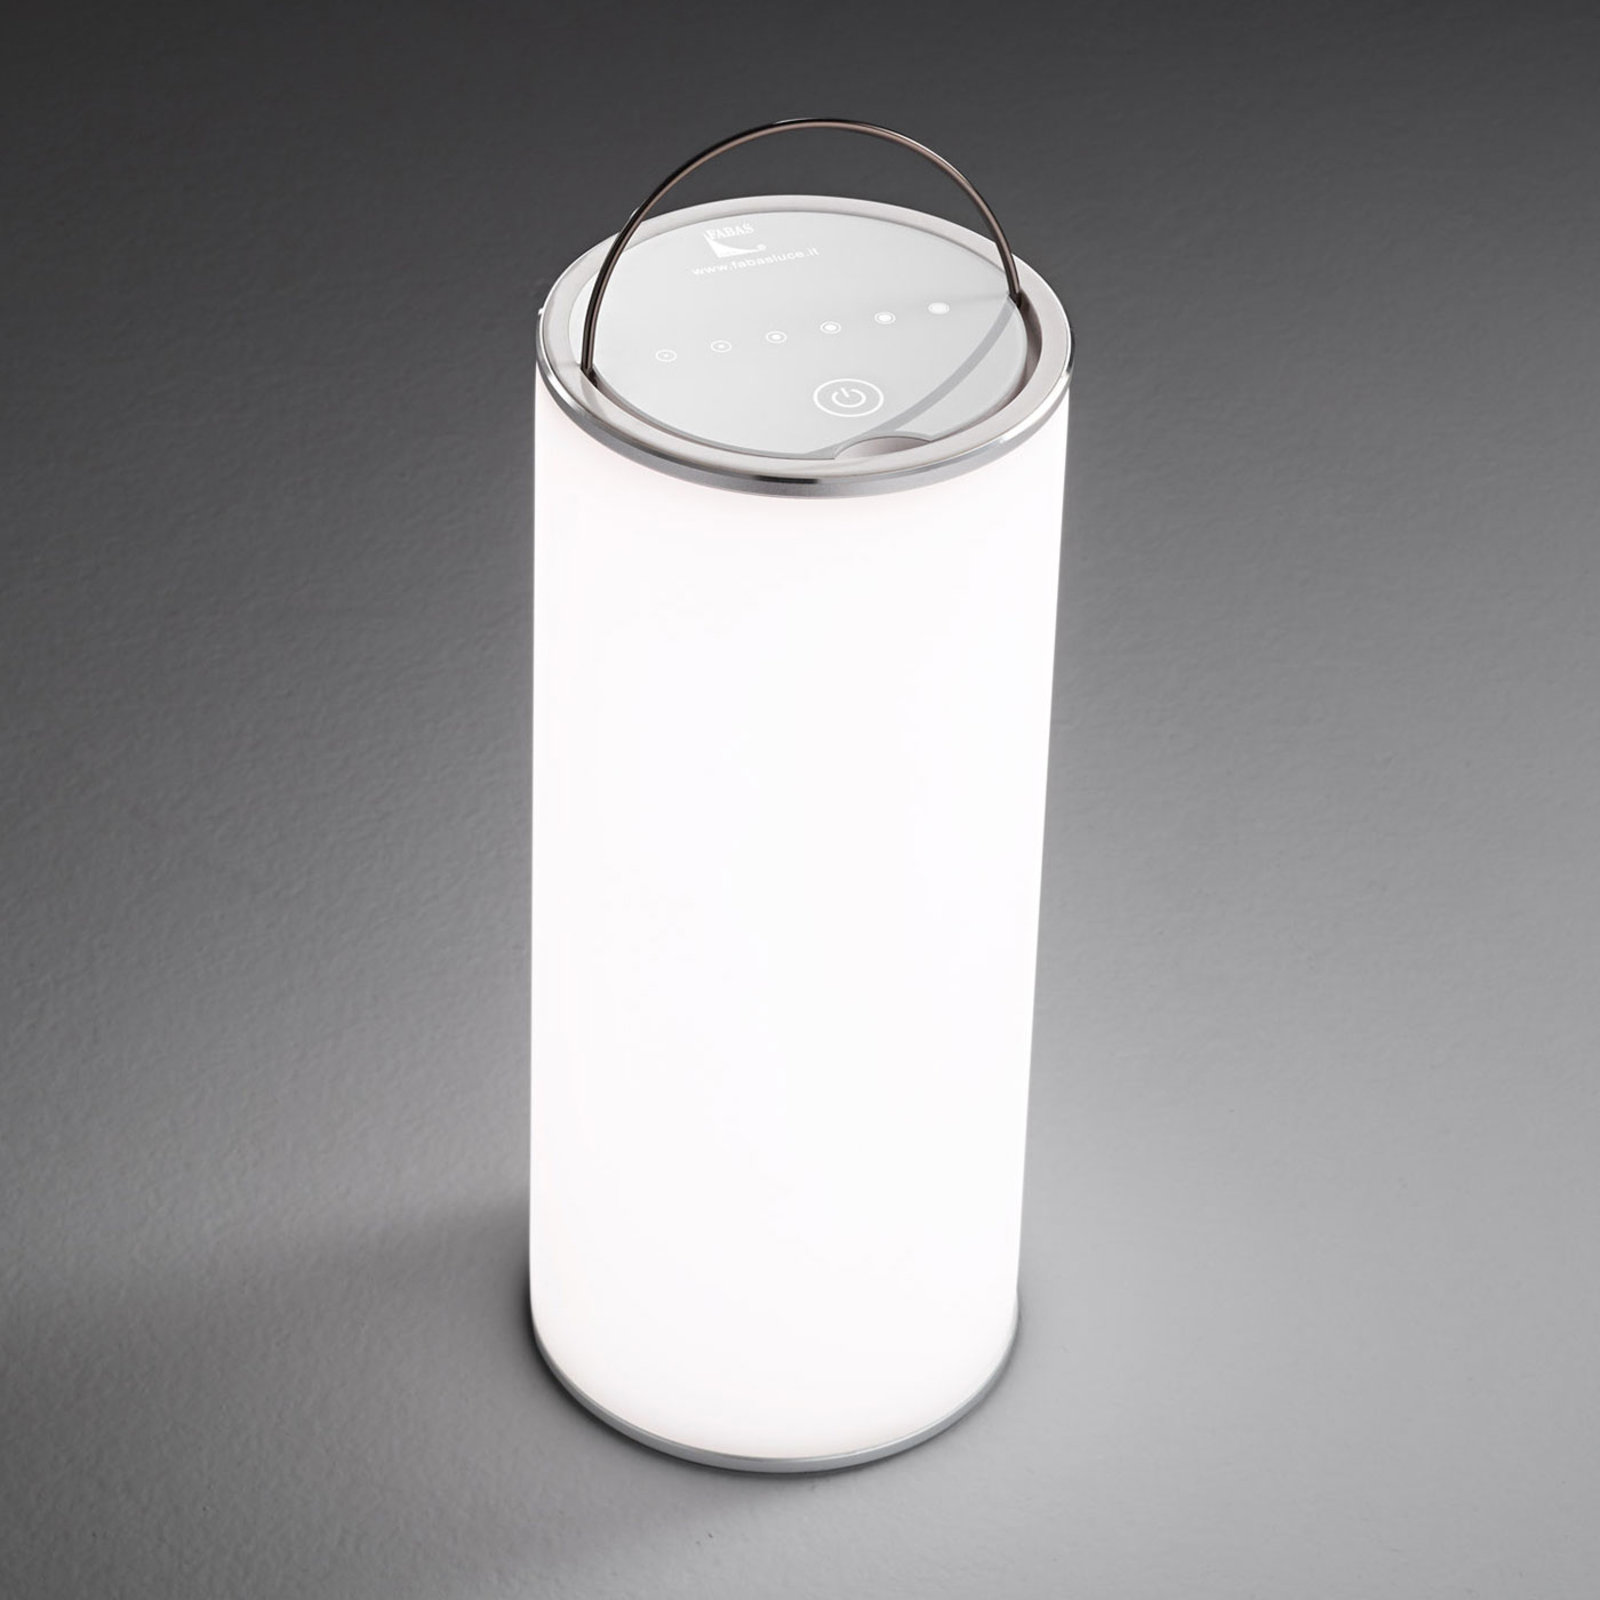 Lampada tavolo LED Thalia luce reversibile, bianca